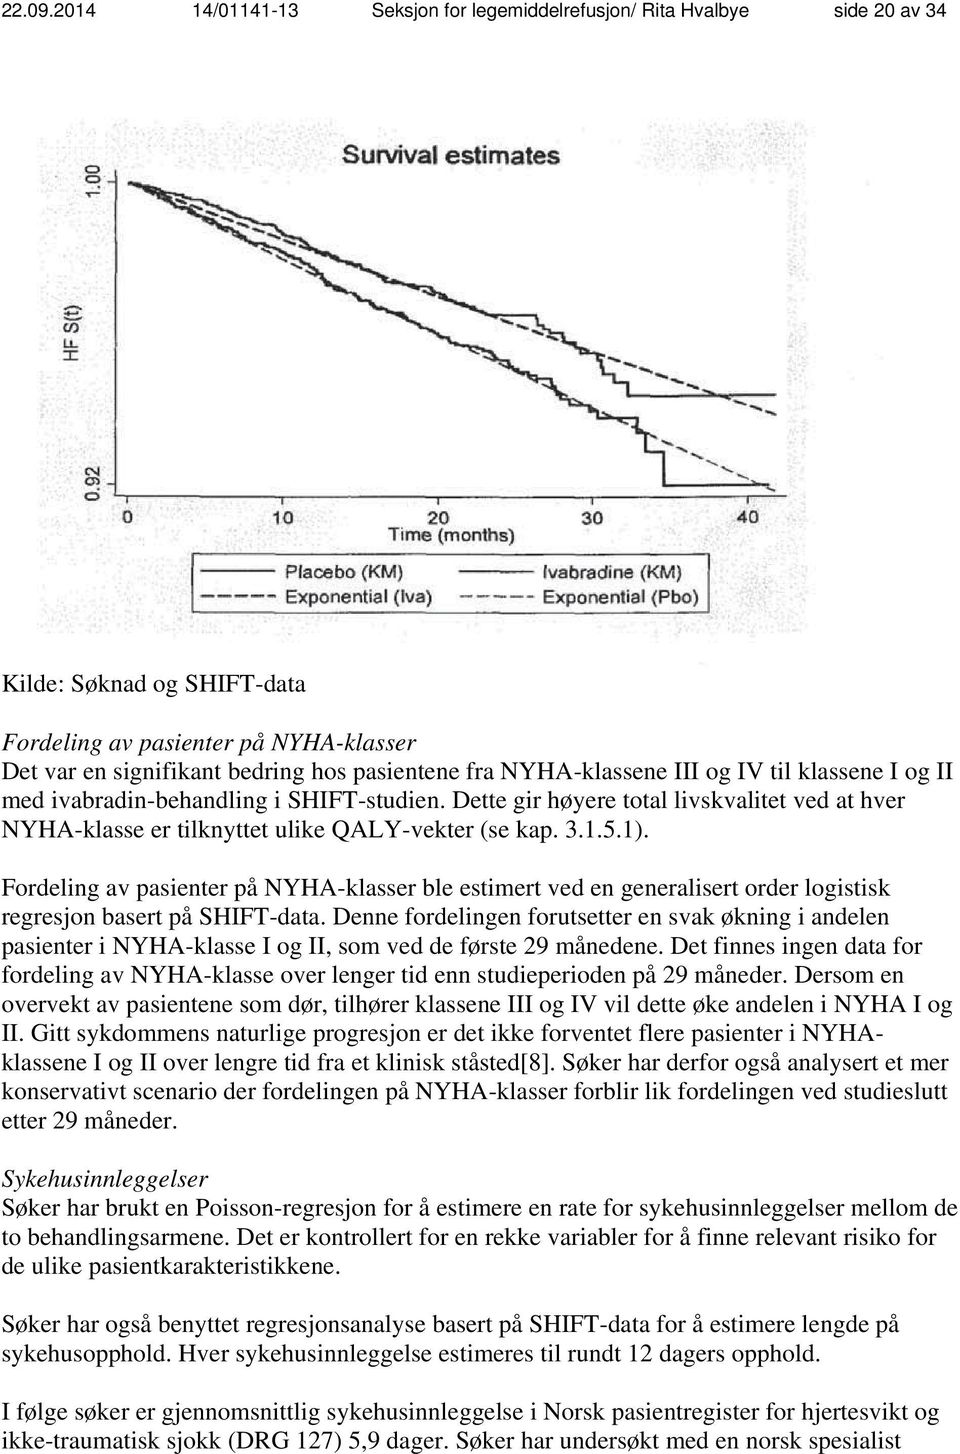 NYHA-klassene III og IV til klassene I og II med ivabradin-behandling i SHIFT-studien. Dette gir høyere total livskvalitet ved at hver NYHA-klasse er tilknyttet ulike QALY-vekter (se kap. 3.1.5.1).